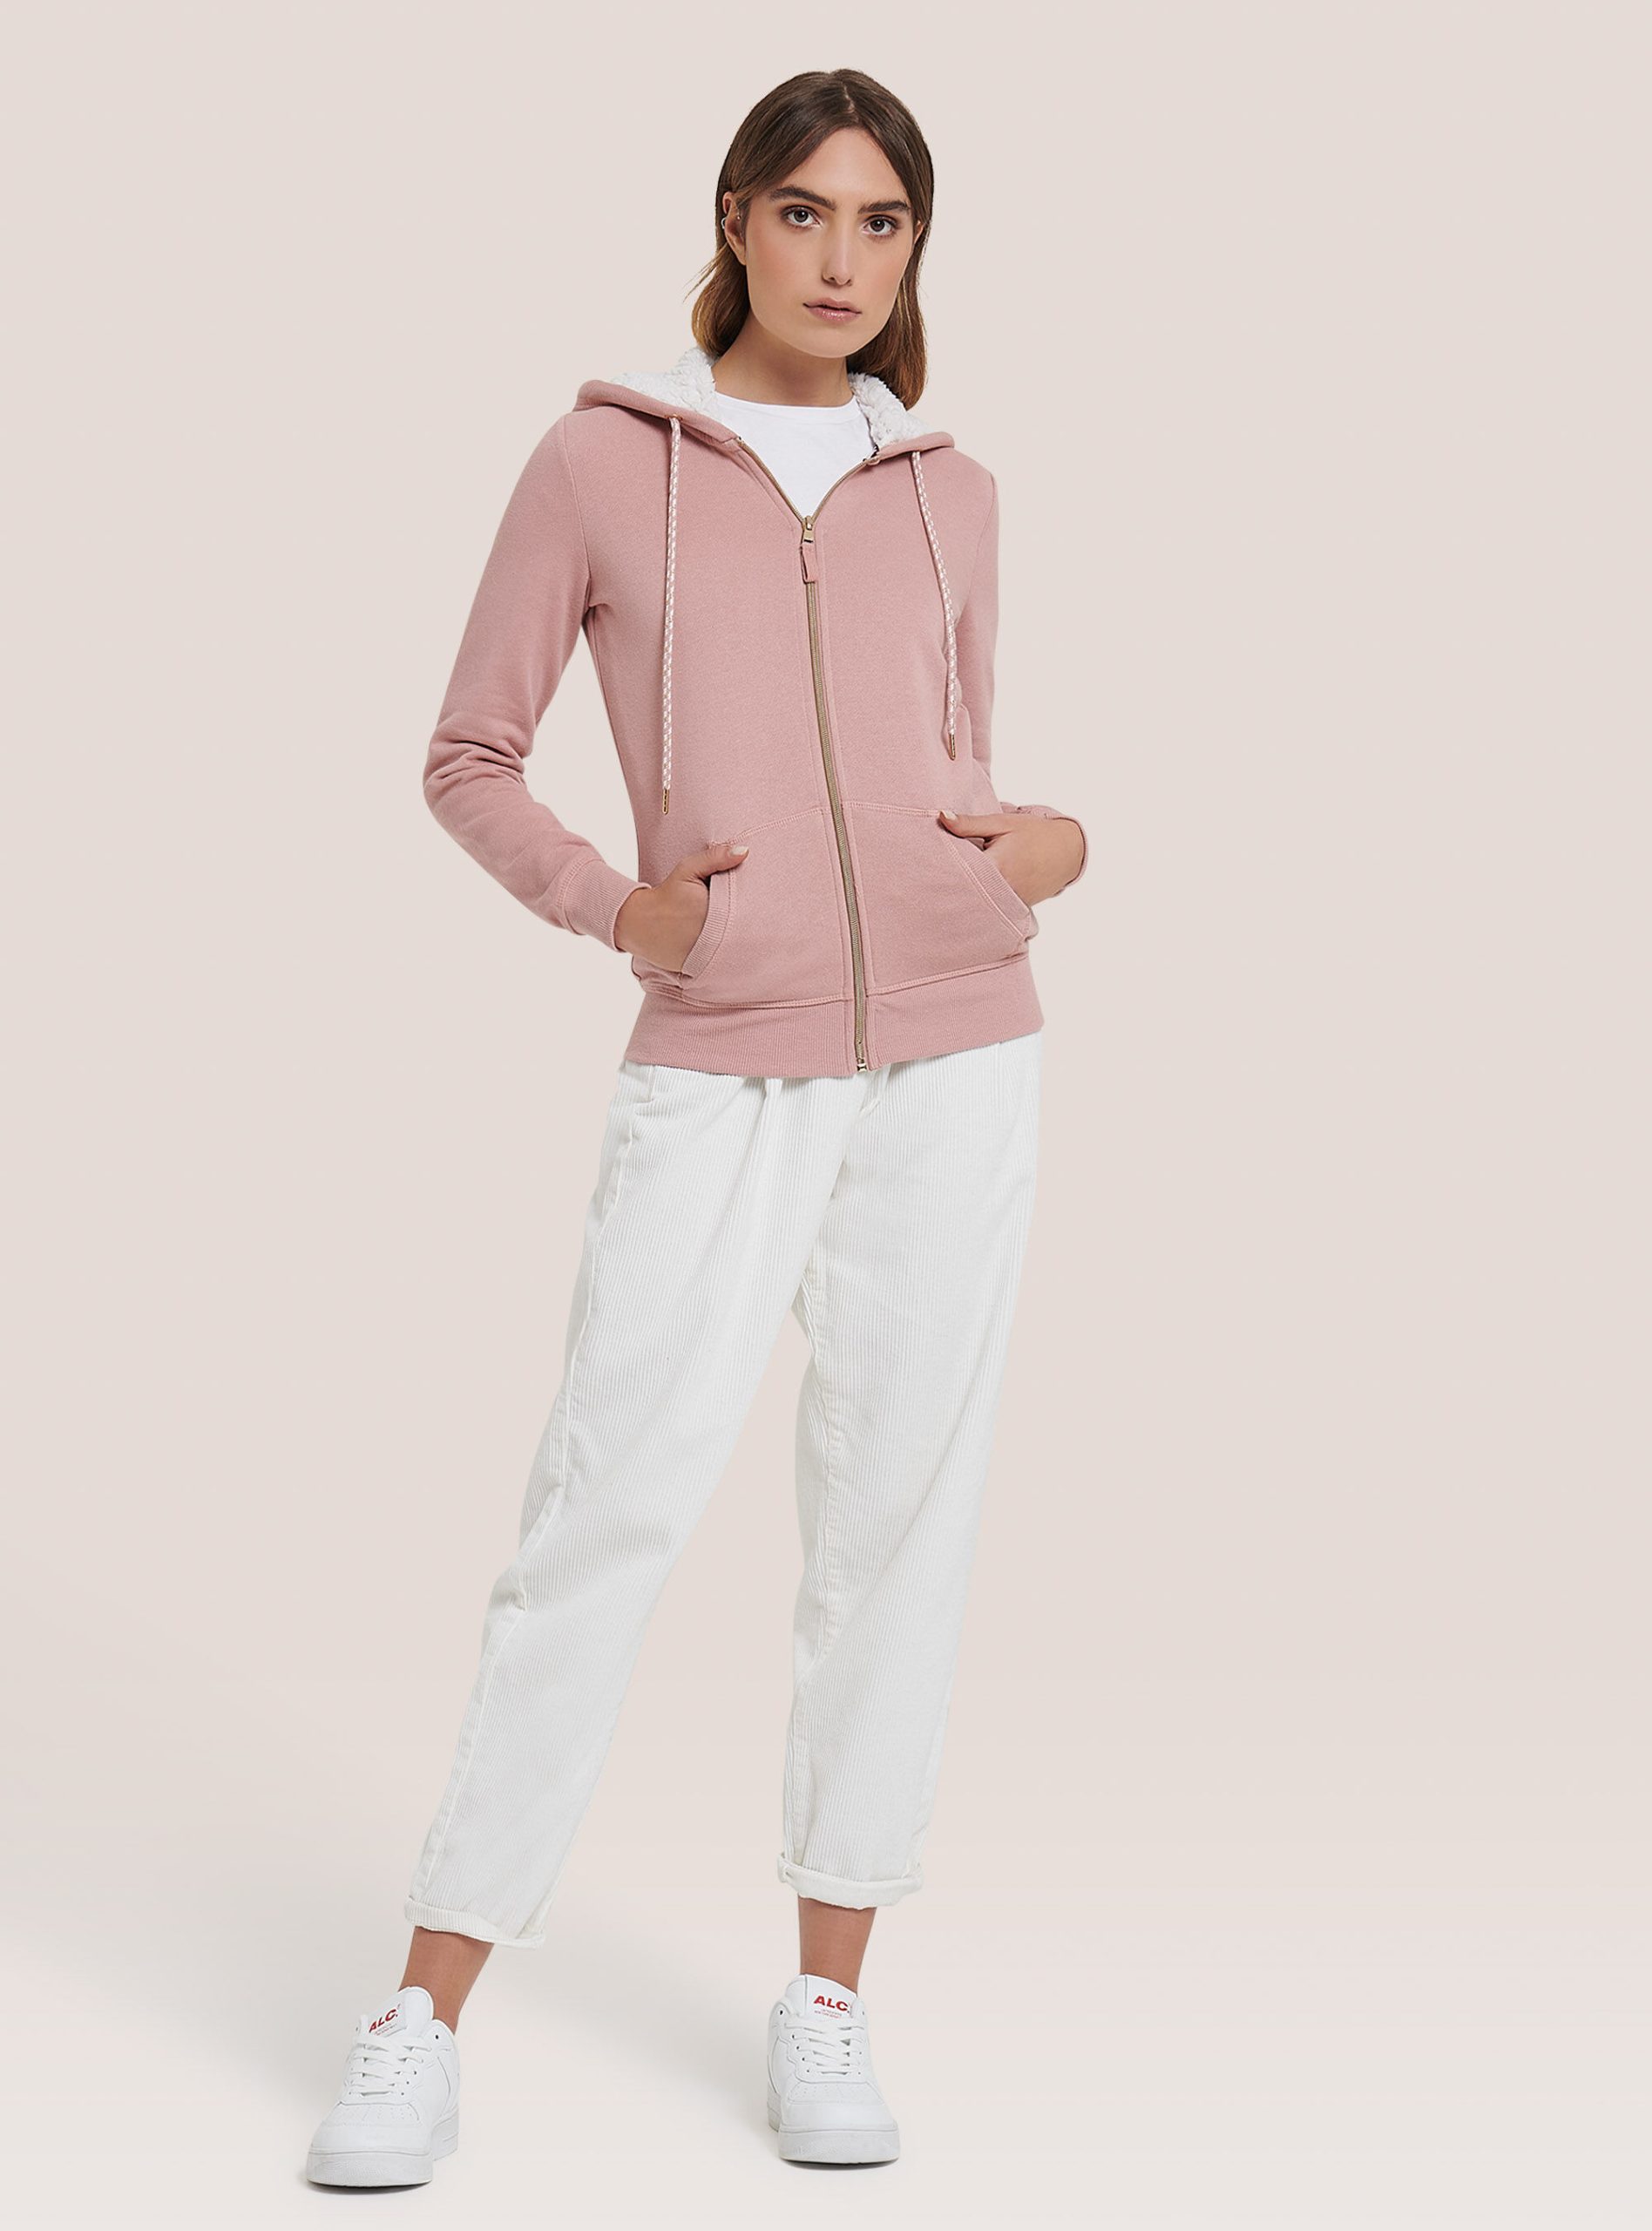 Sweatshirts Sonderrabatt Frauen Alcott C051 Pink Sweatshirt Mit Reißverschluss Und Kapuze Aus Kunstfell – 1